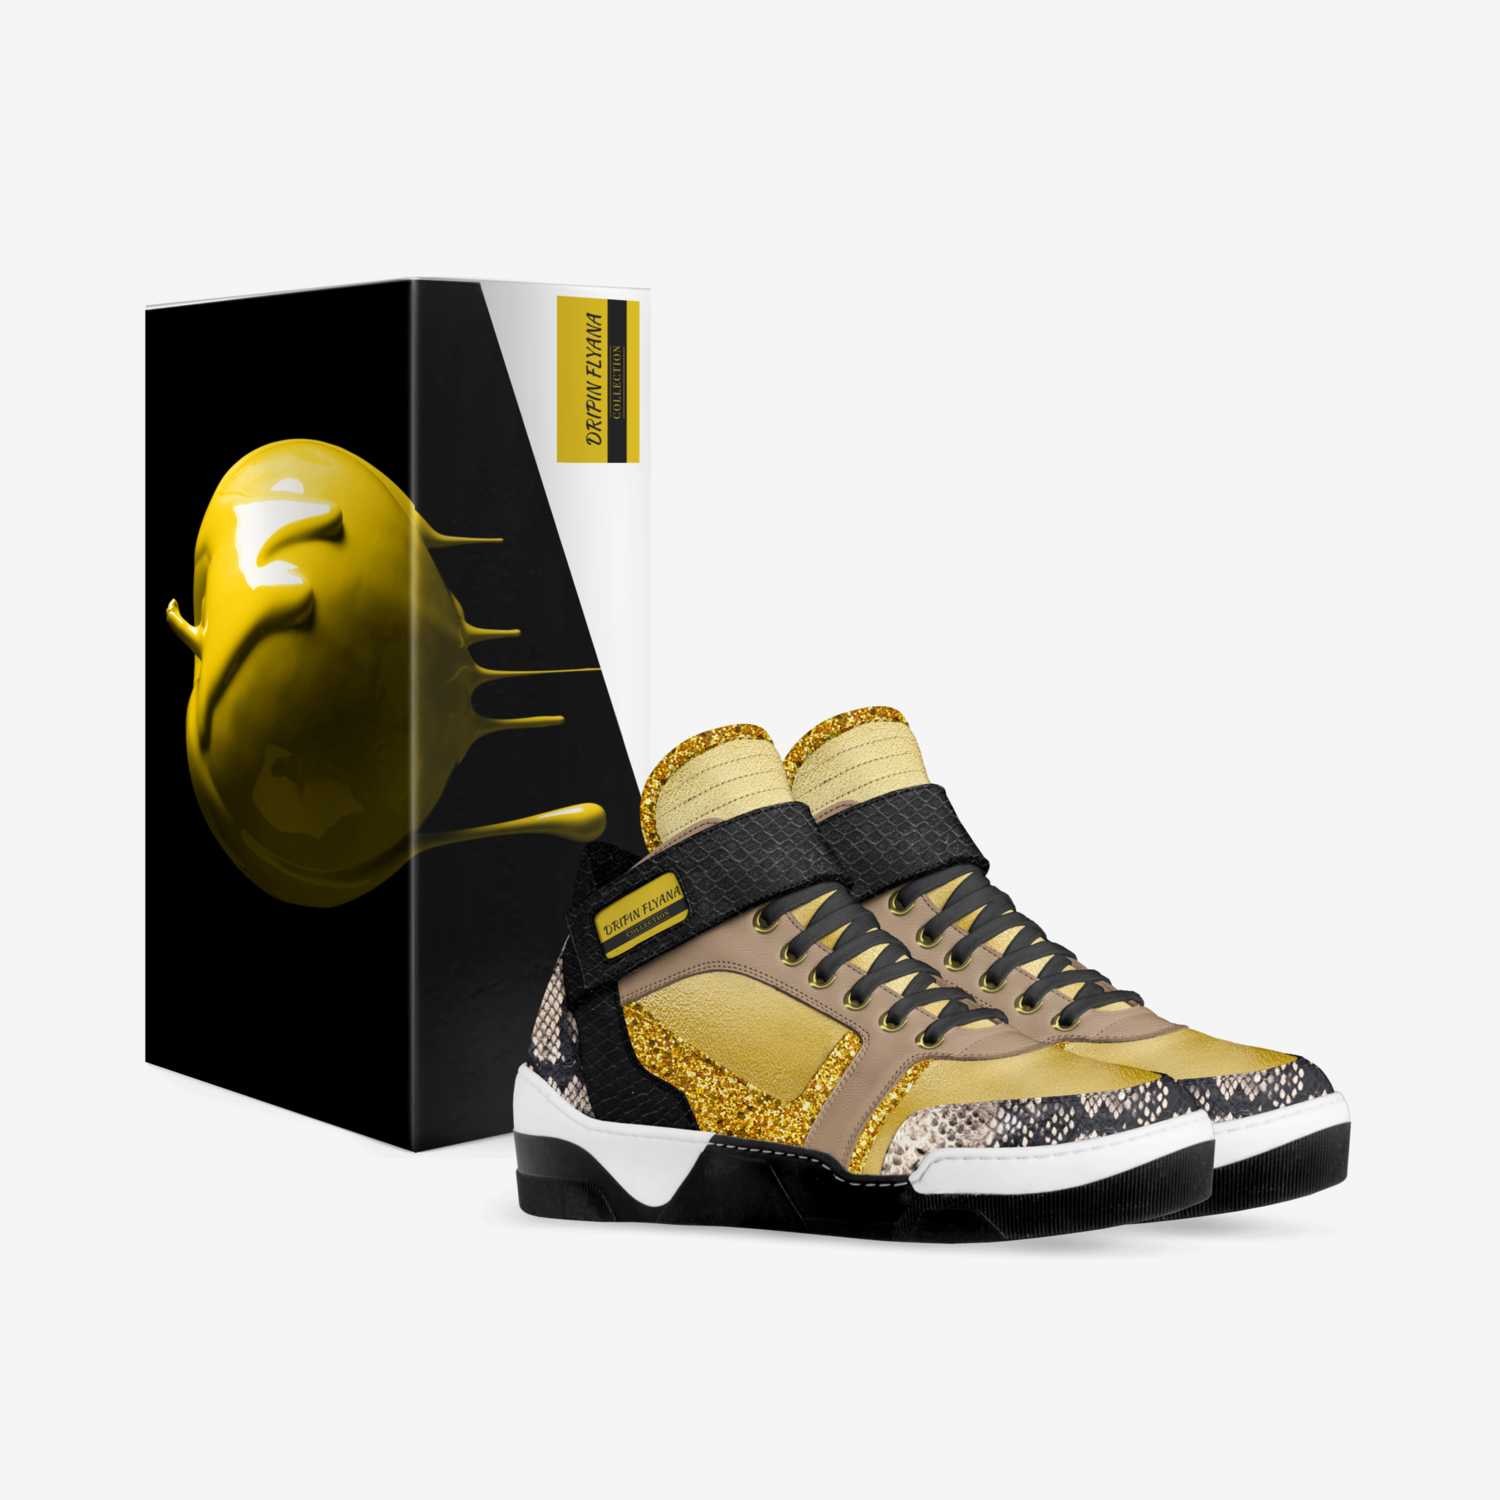 DRIPIN FLYANA custom made in Italy shoes by Shanandoah Jones | Box view